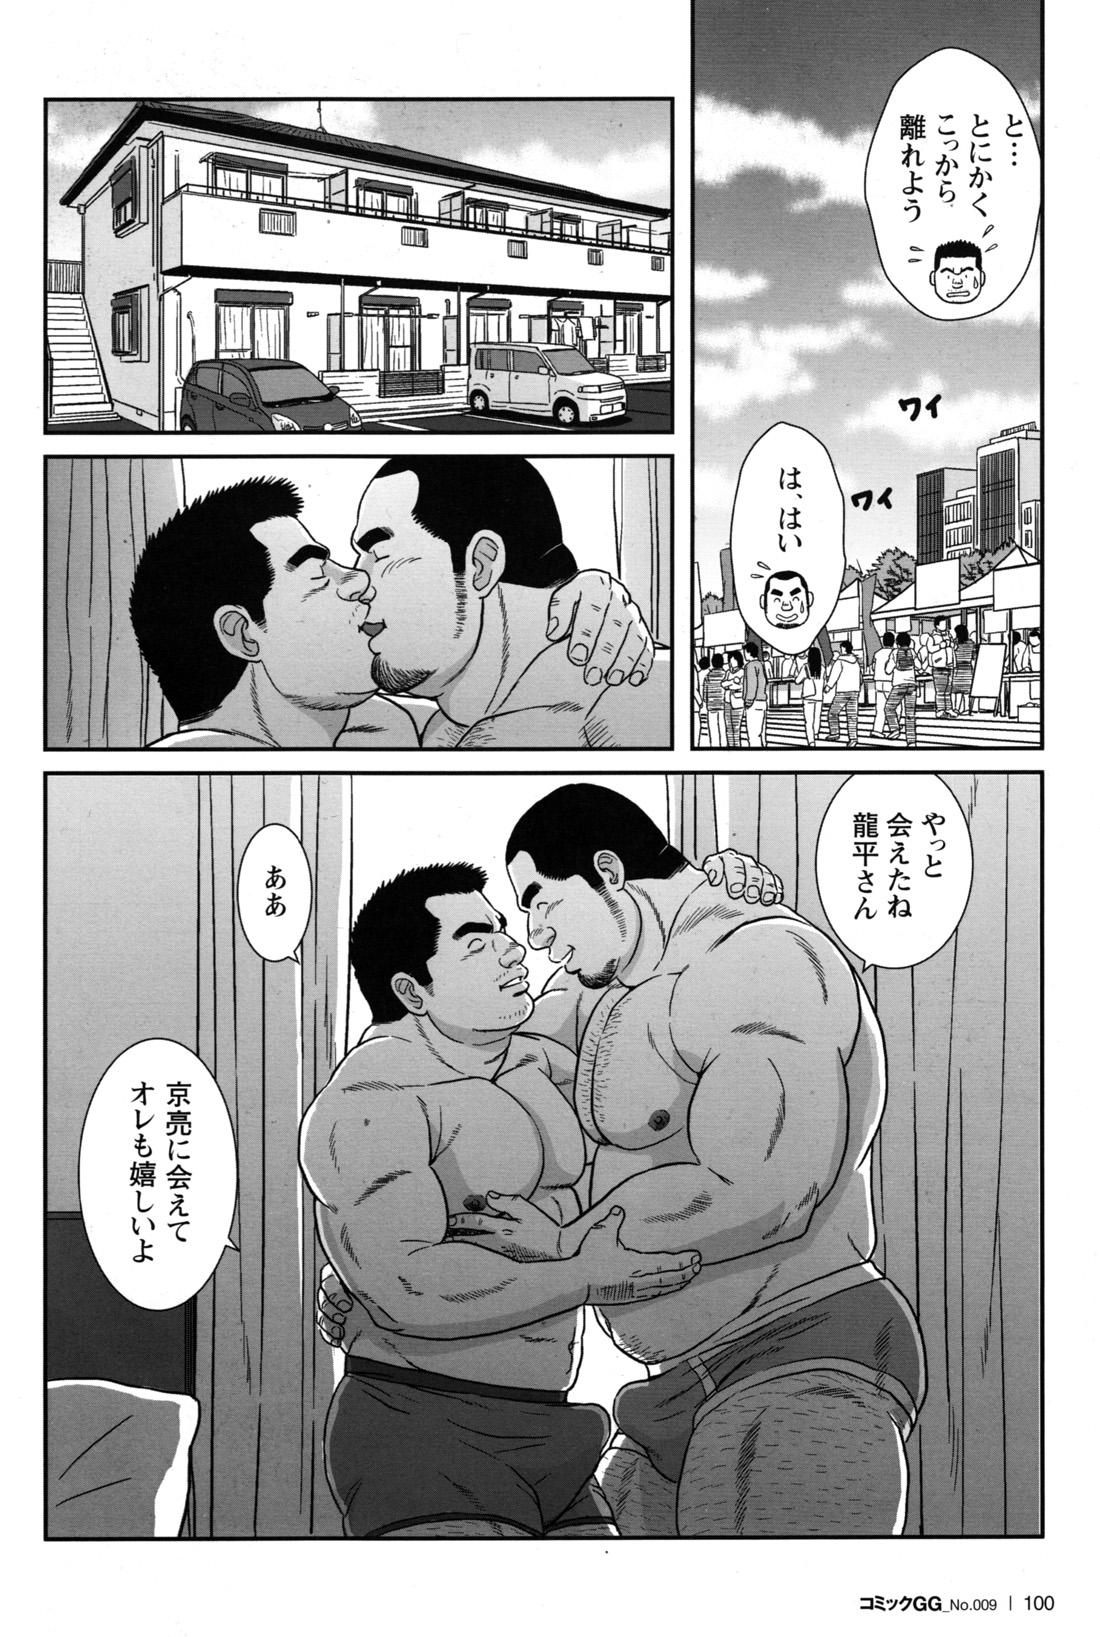 Comic G-men Gaho No.09 Gacchibi Zeme 95